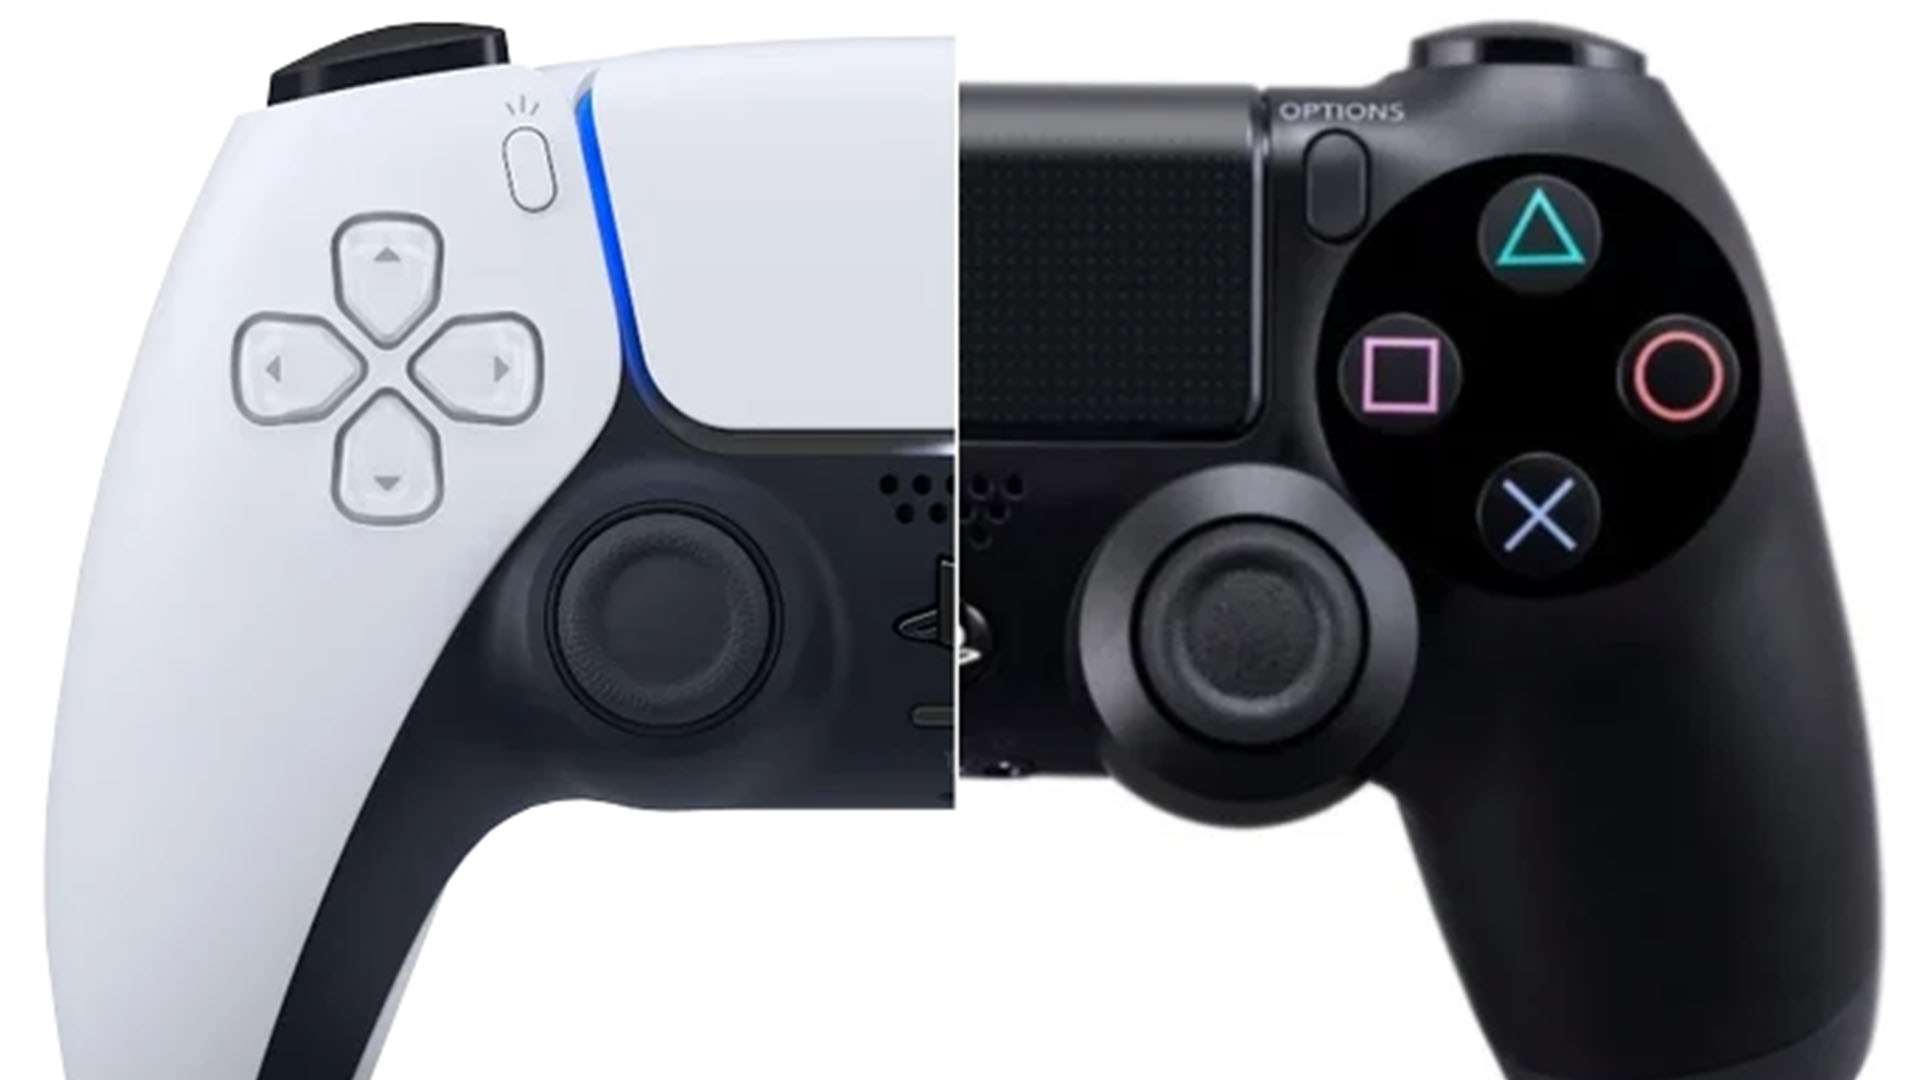 Olejcie to PS4 i kupujcie PS5 - zachęca Sony swoich klientów